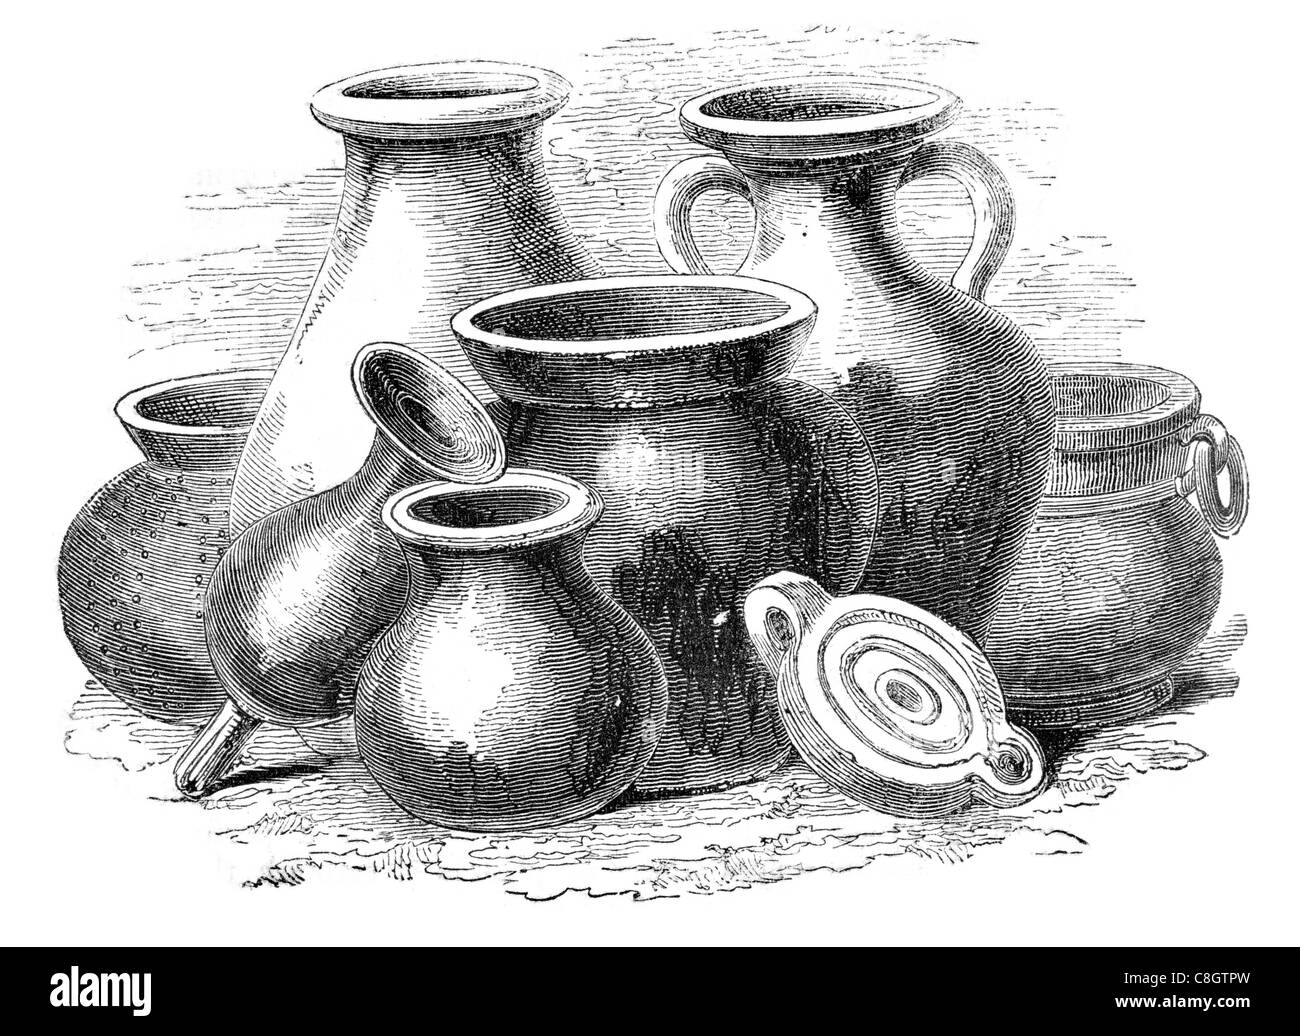 La romaine des vases en céramique faïence vaisselle Poterie argile kaolin ball objet décoratif feldspath quartz Creamware Banque D'Images